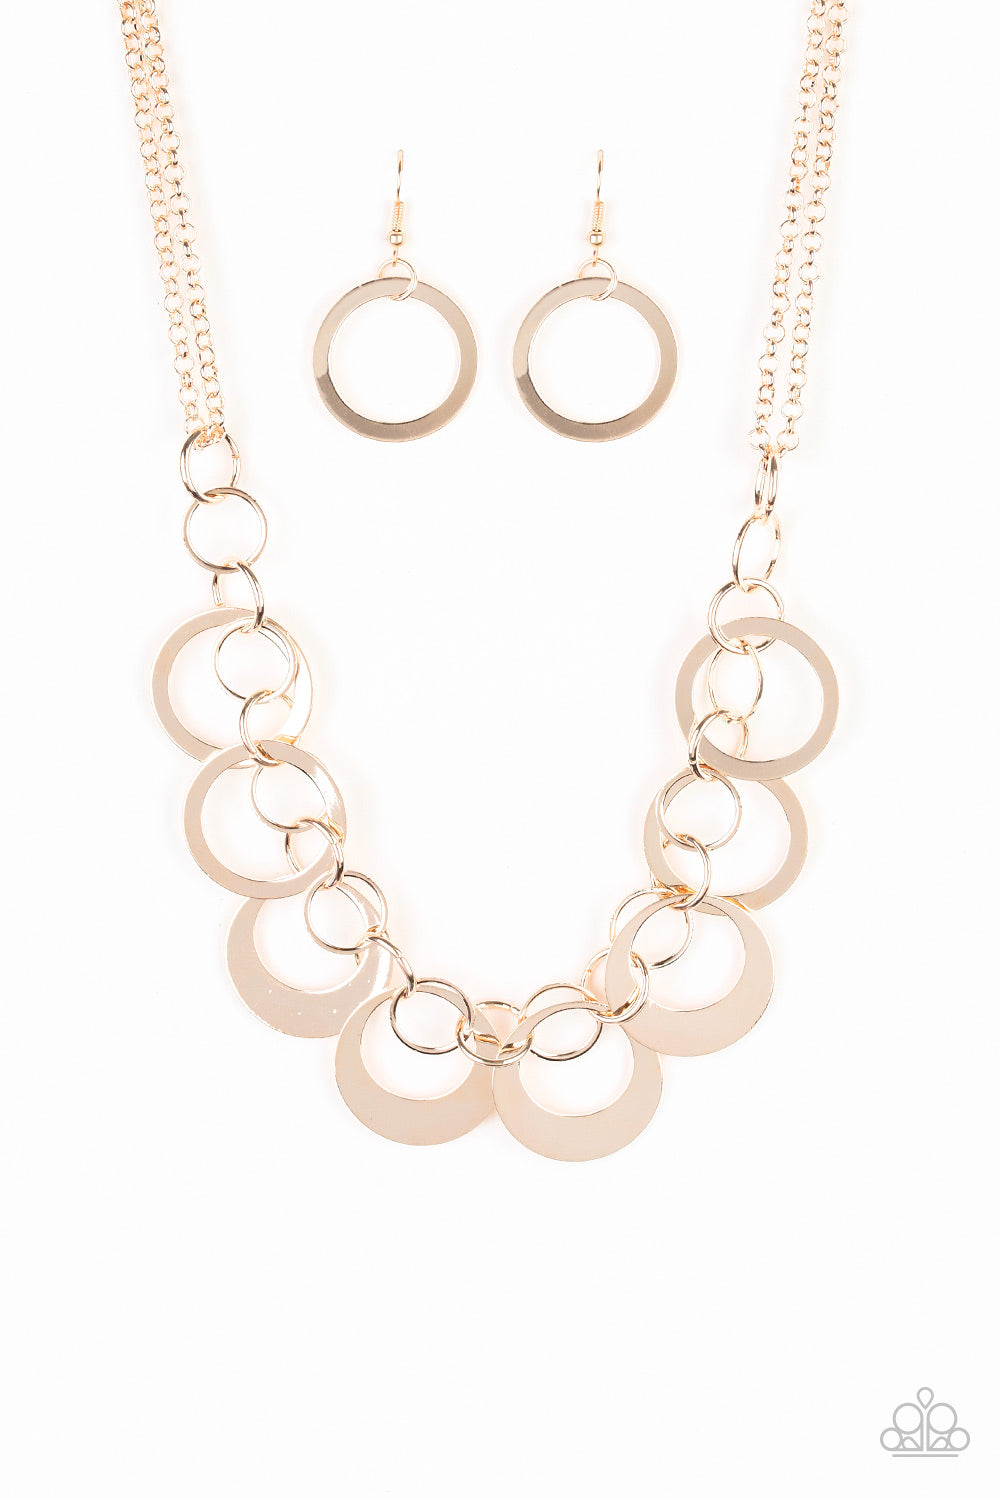 Paparazzi Necklaces - In Full Orbit - Rose Gold